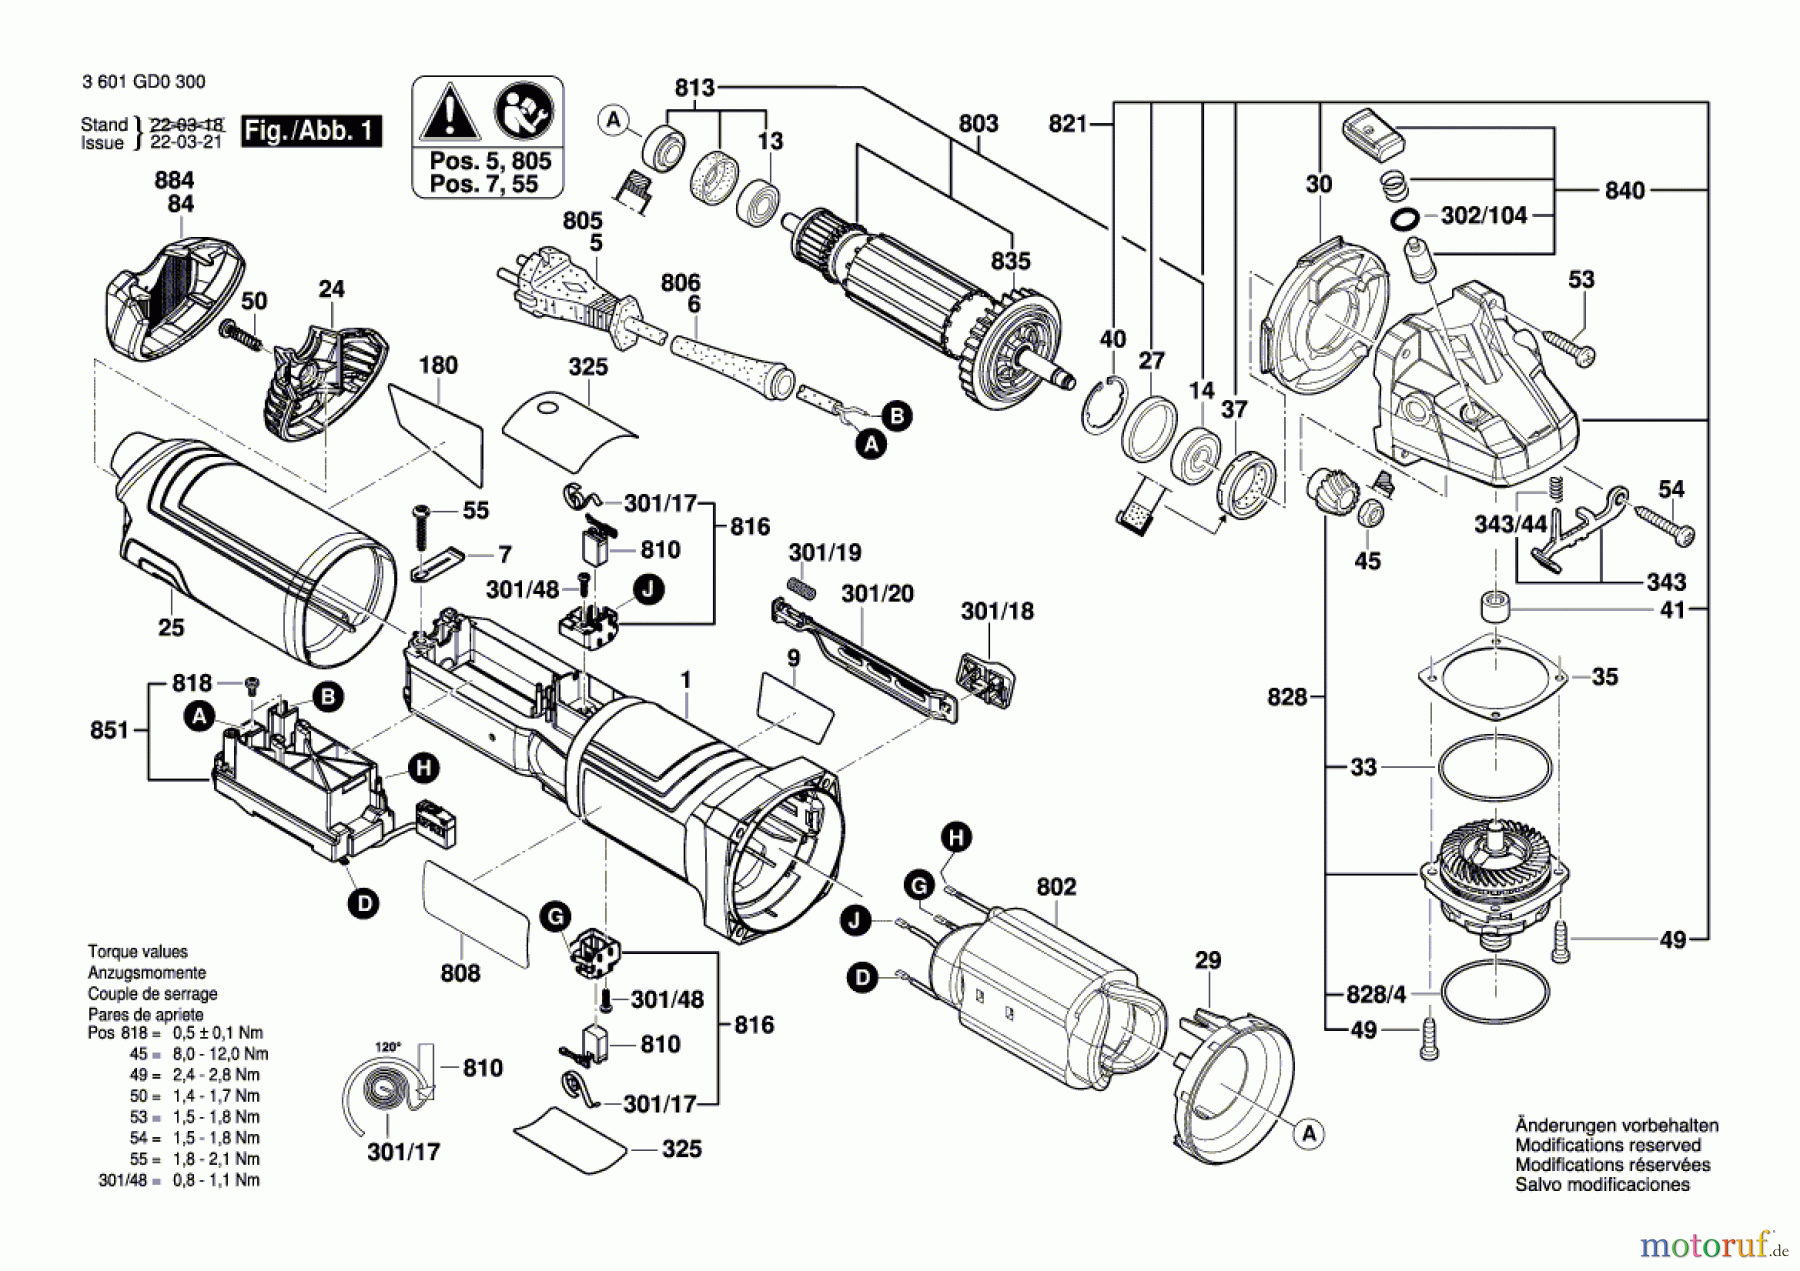  Bosch Werkzeug Winkelschleifer GWS 17-125 TS Seite 1